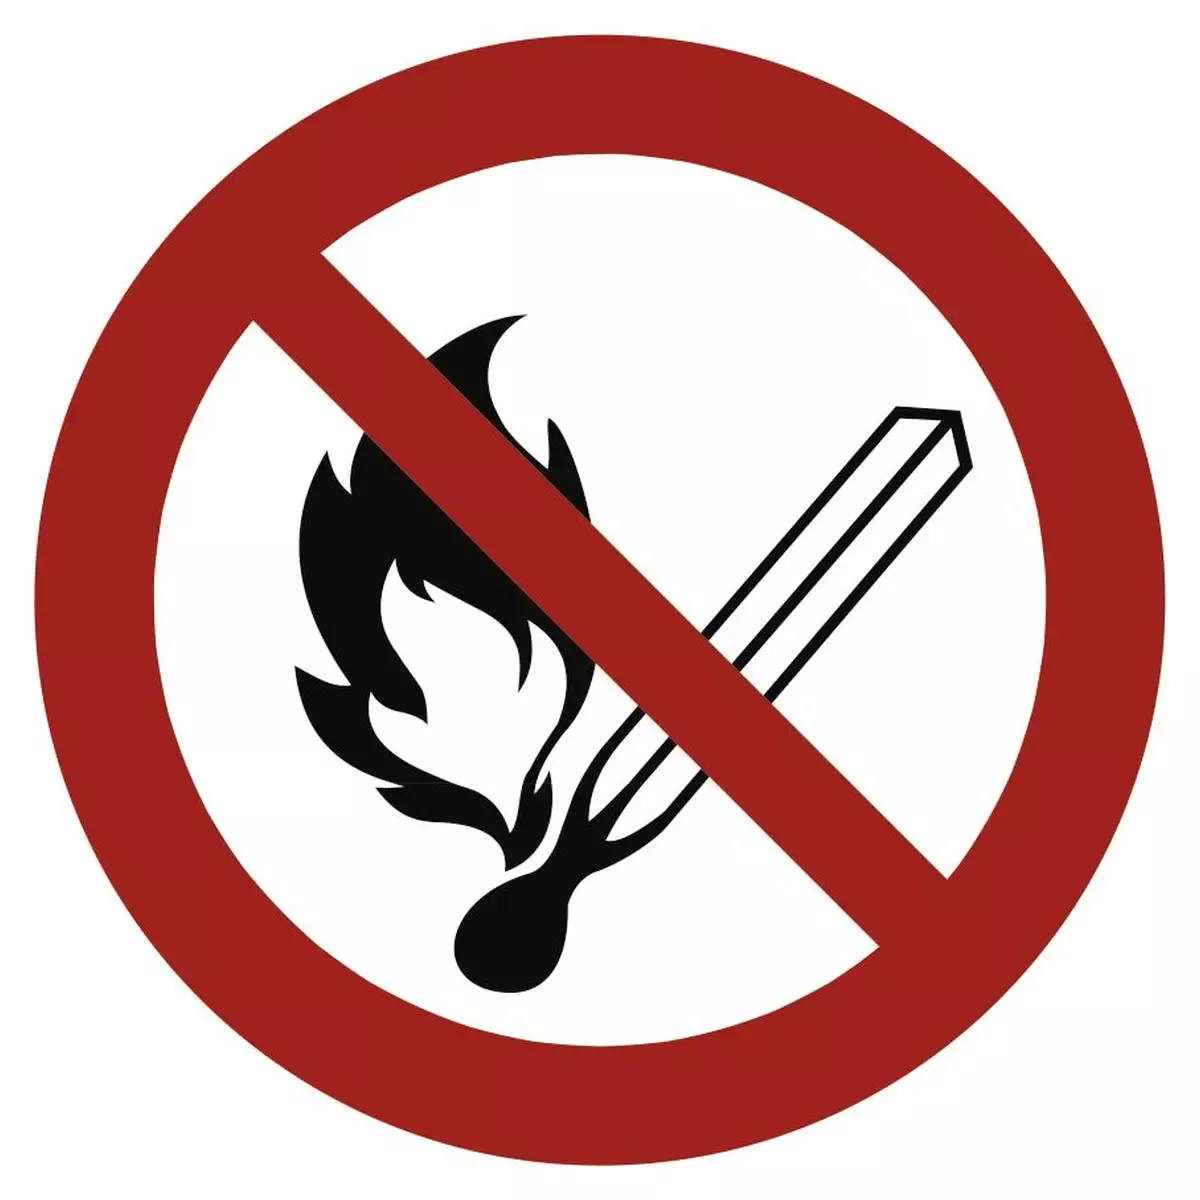 Feuer, offenes Licht und Rauchen verboten ISO 7010, Alu, Ø 315 mm